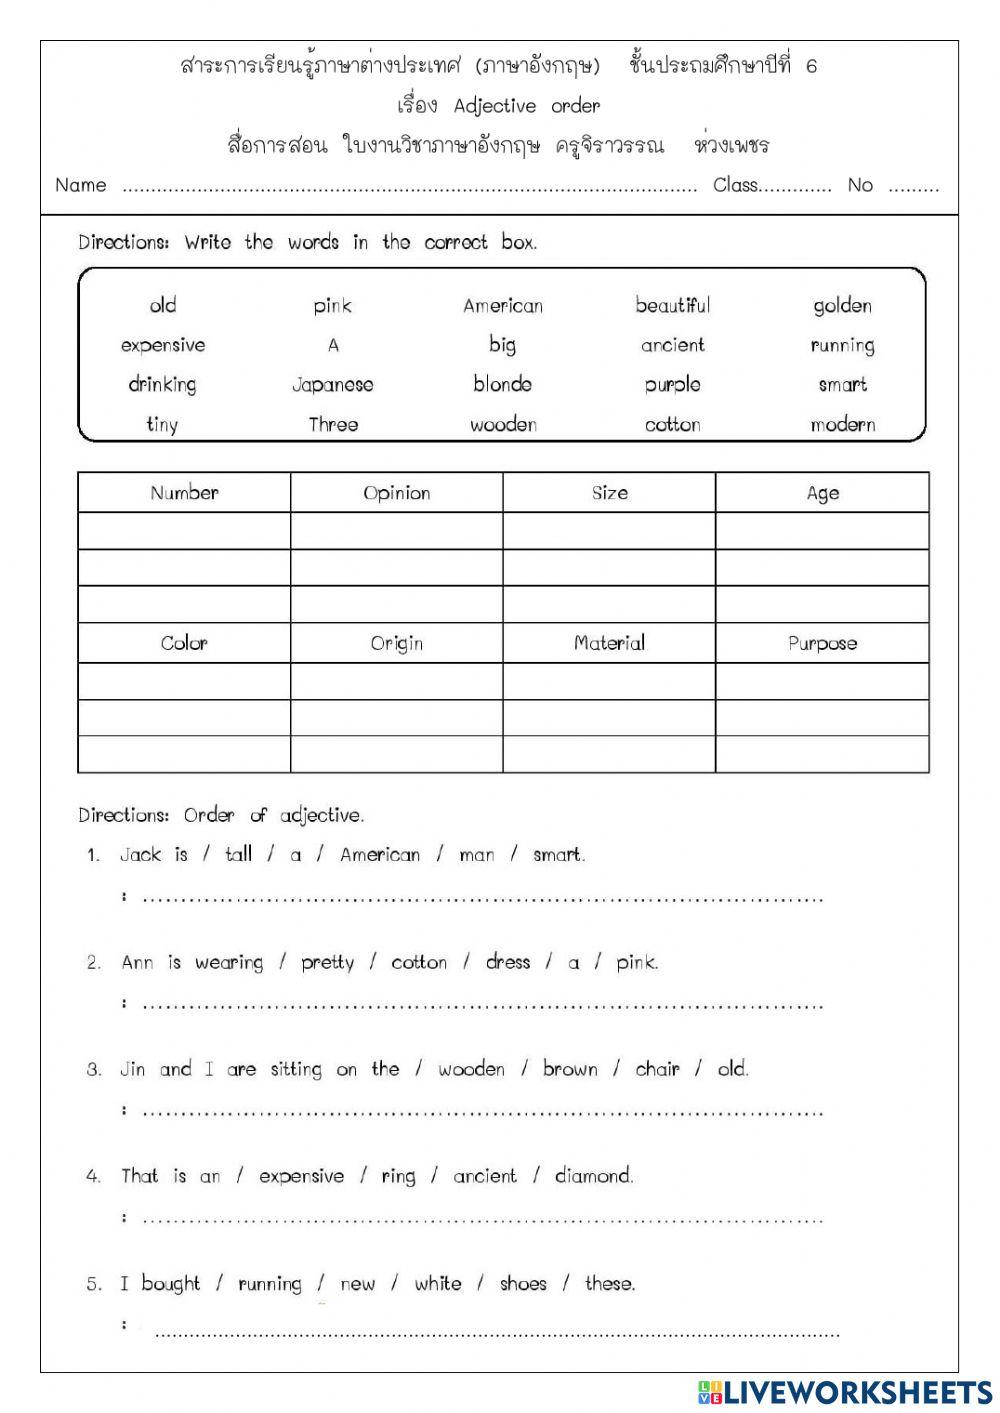 Adjective order worksheet 1